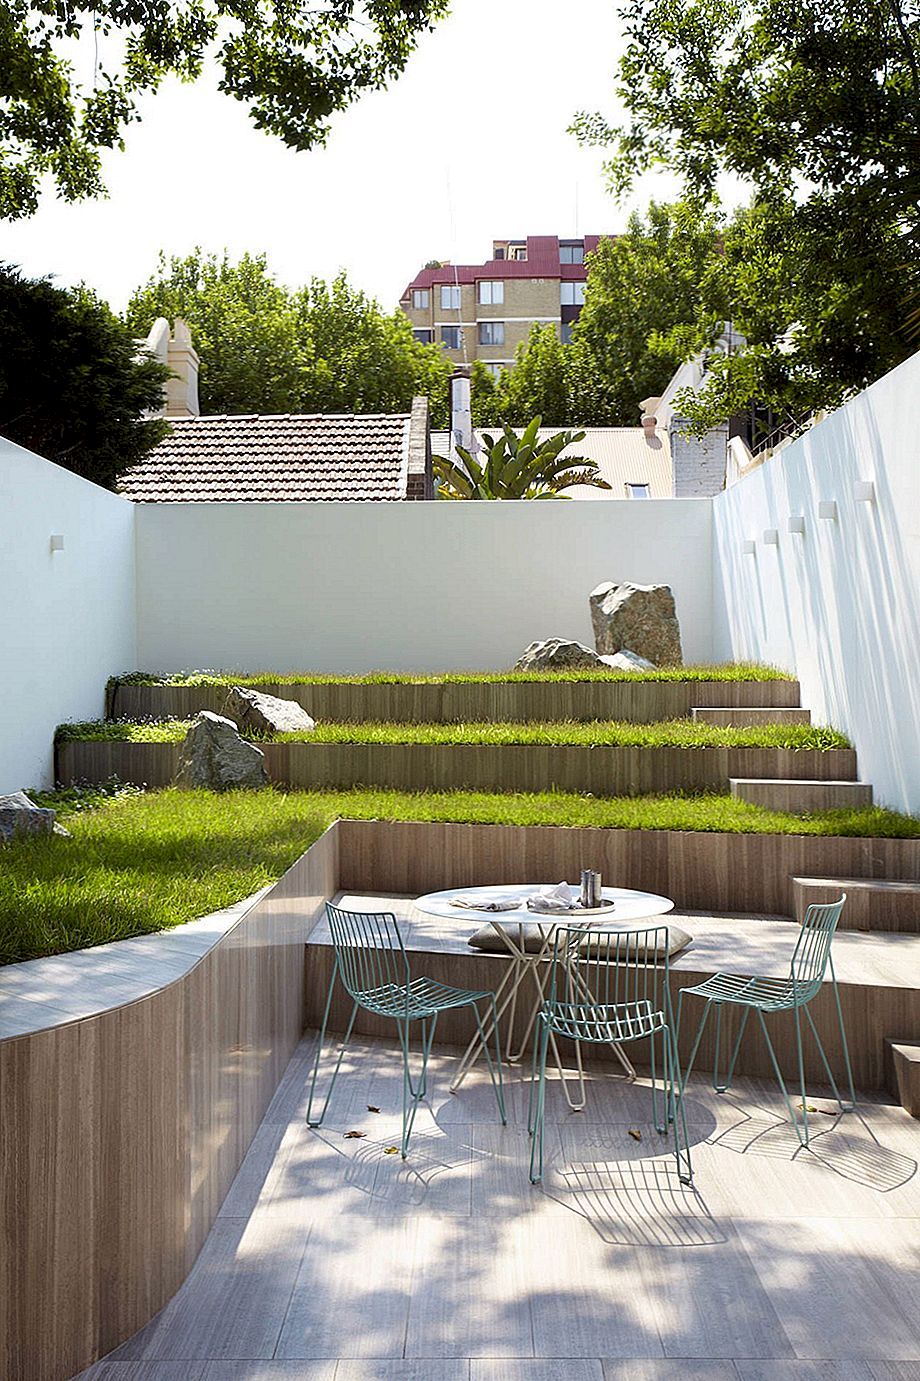 Vrtovi s terasama - kako se uzeti ljepotu na sljedeću razinu